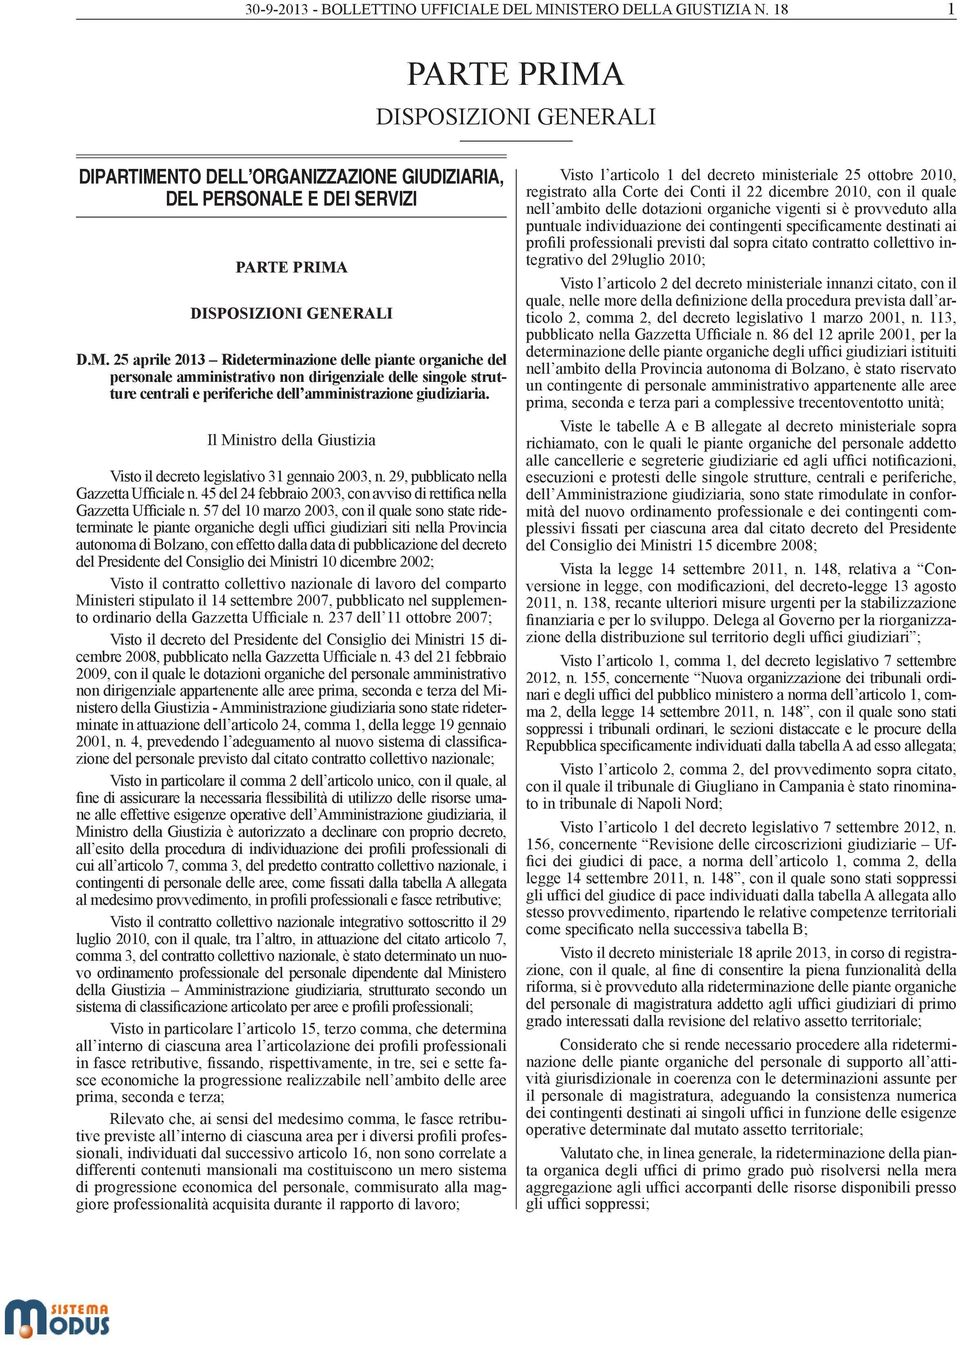 Il Ministro della Giustizia Visto il decreto legislativo 31 gennaio 2003, n. 29, pubblicato nella Gazzetta Ufficiale n. 45 del 24 febbraio 2003, con avviso di rettifica nella Gazzetta Ufficiale n.